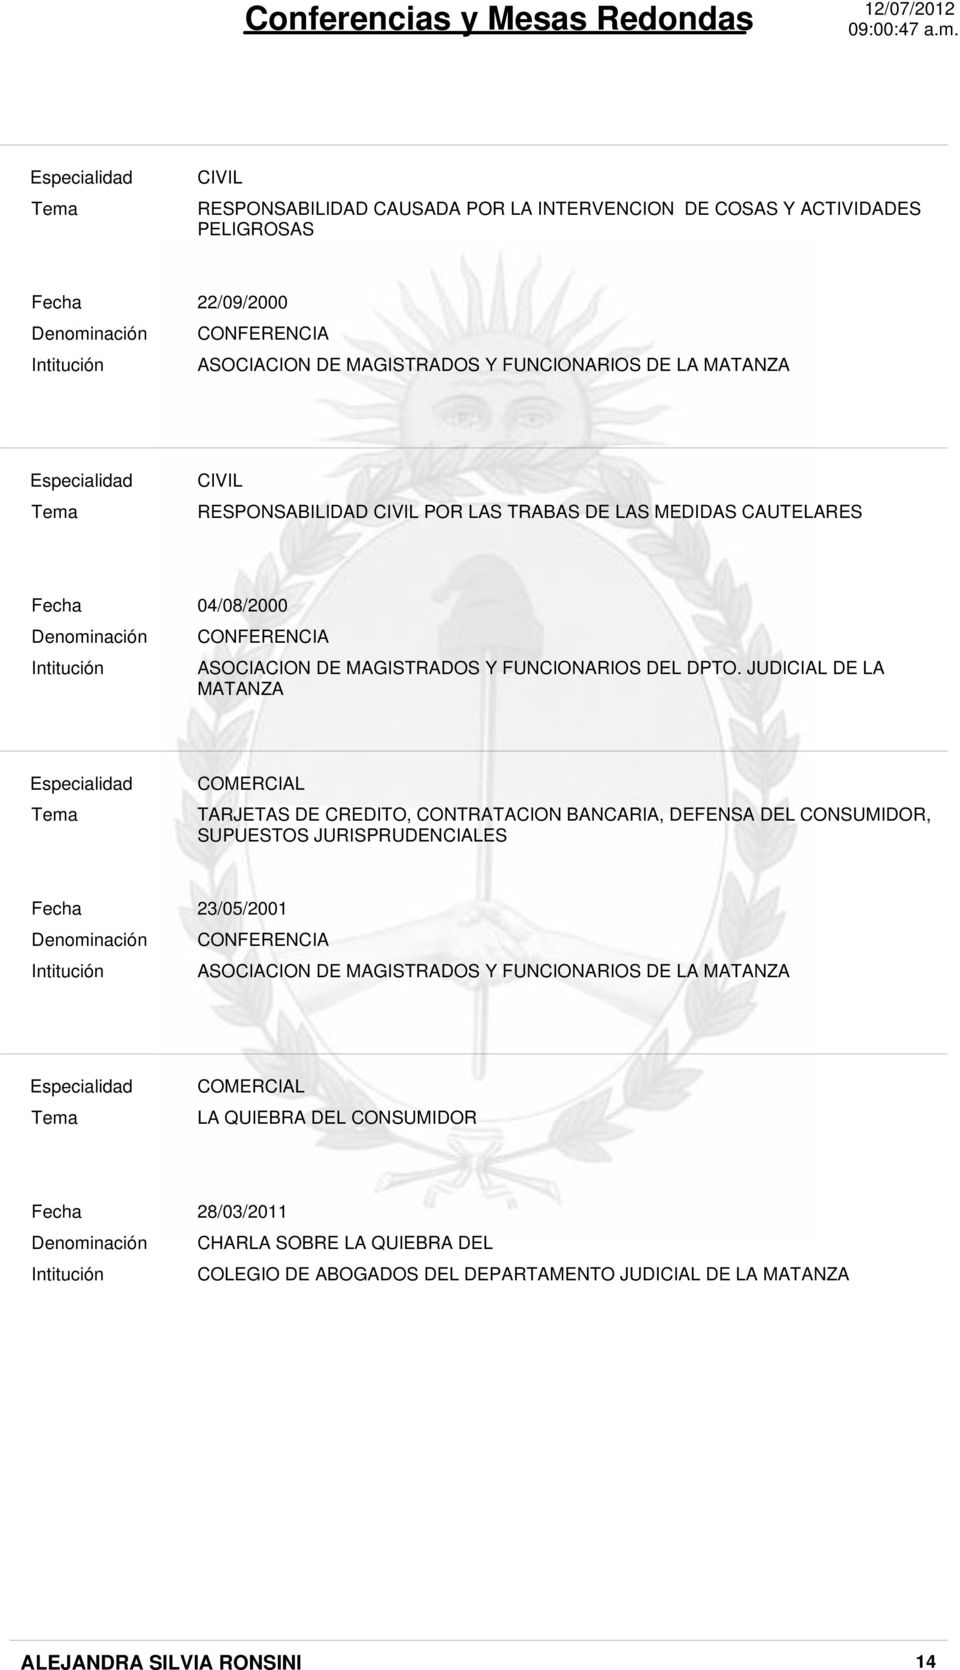 JUDICIAL DE LA MATANZA TARJETAS DE CREDITO, CONTRATACION BANCARIA, DEFENSA DEL CONSUMIDOR, SUPUESTOS JURISPRUDENCIALES Intitución 23/05/2001 CONFERENCIA ASOCIACION DE MAGISTRADOS Y